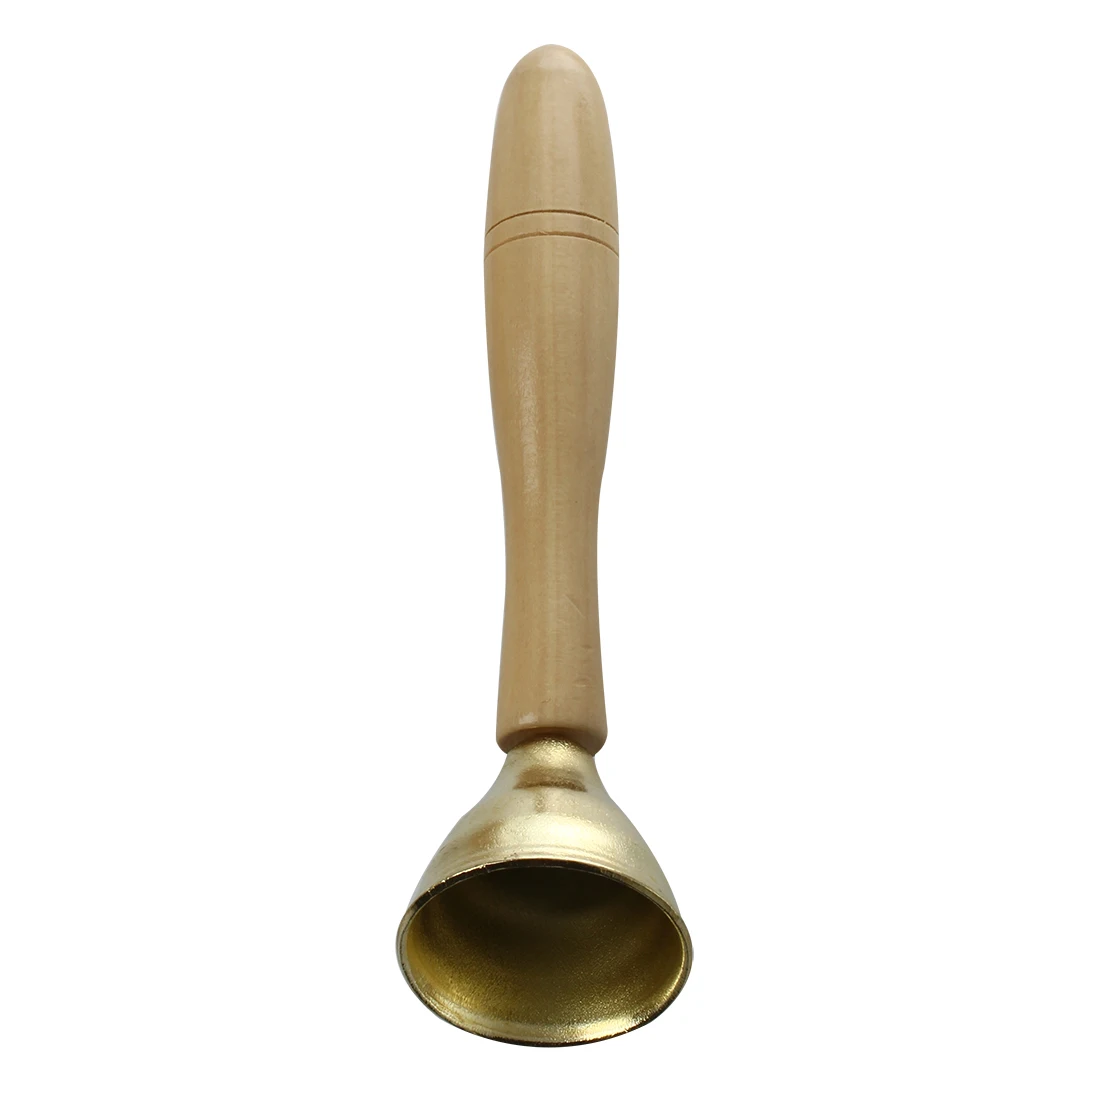 2 шт. мини золотой колокольчик музыкальные игрушки для детей с деревянной ручкой